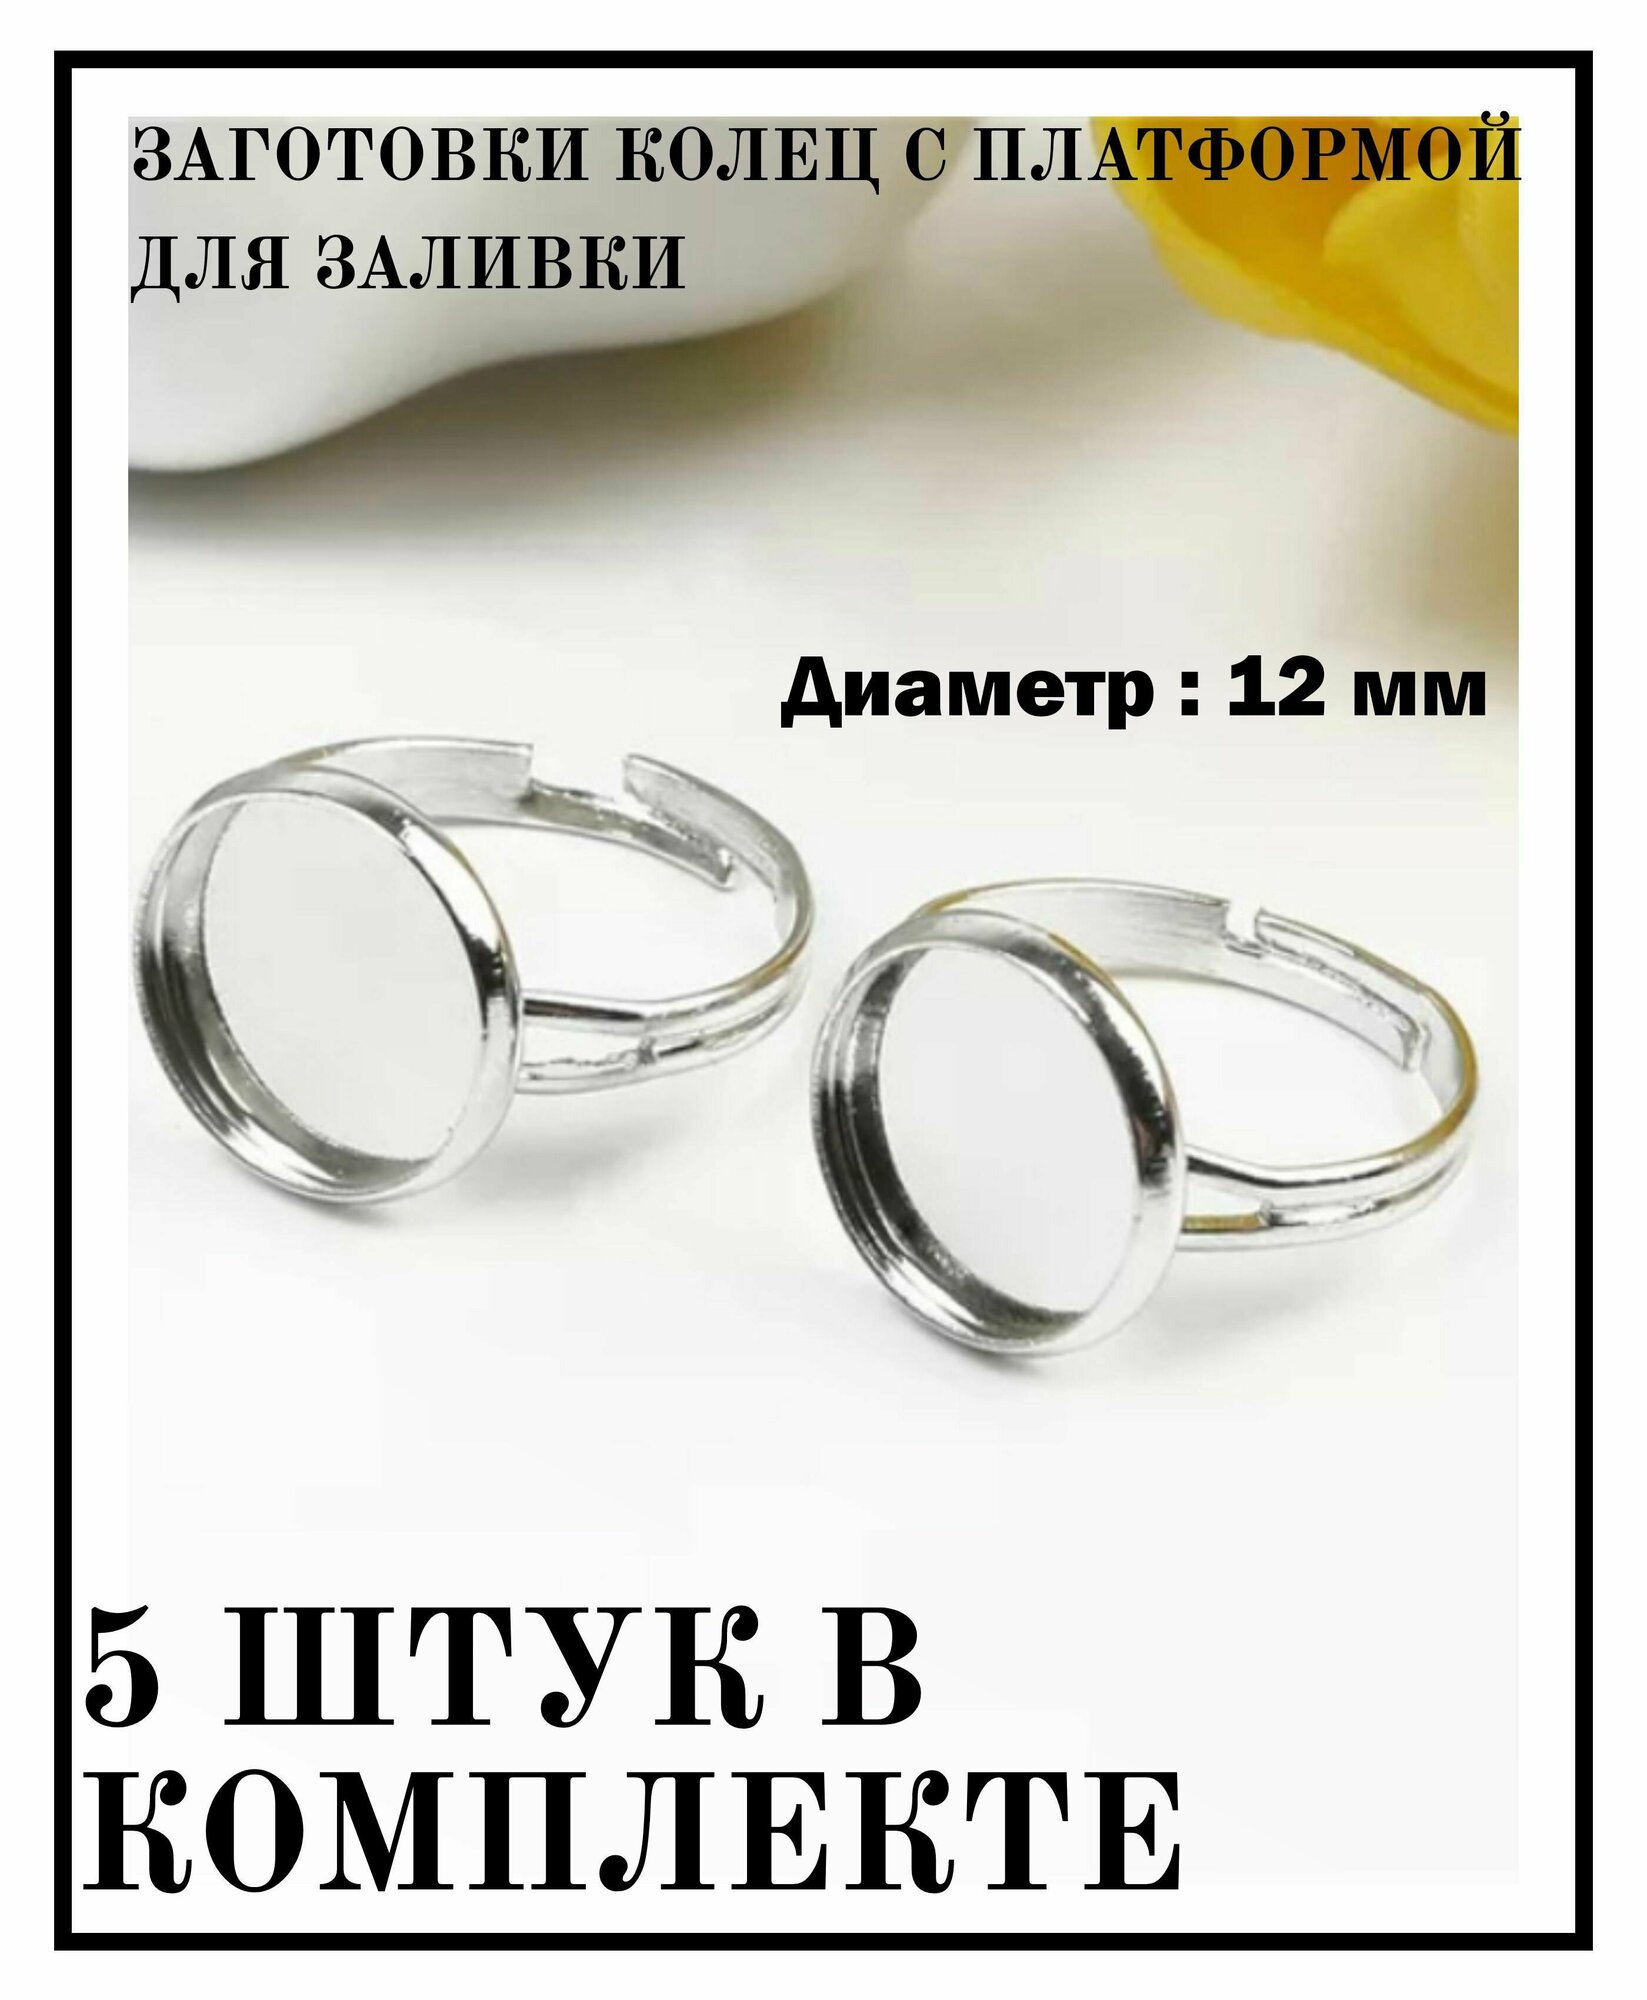 Фурнитура для бижутерии основа, заготовка для кольца кабошон набор из 5 шт женские украшения кольцо с бортиками